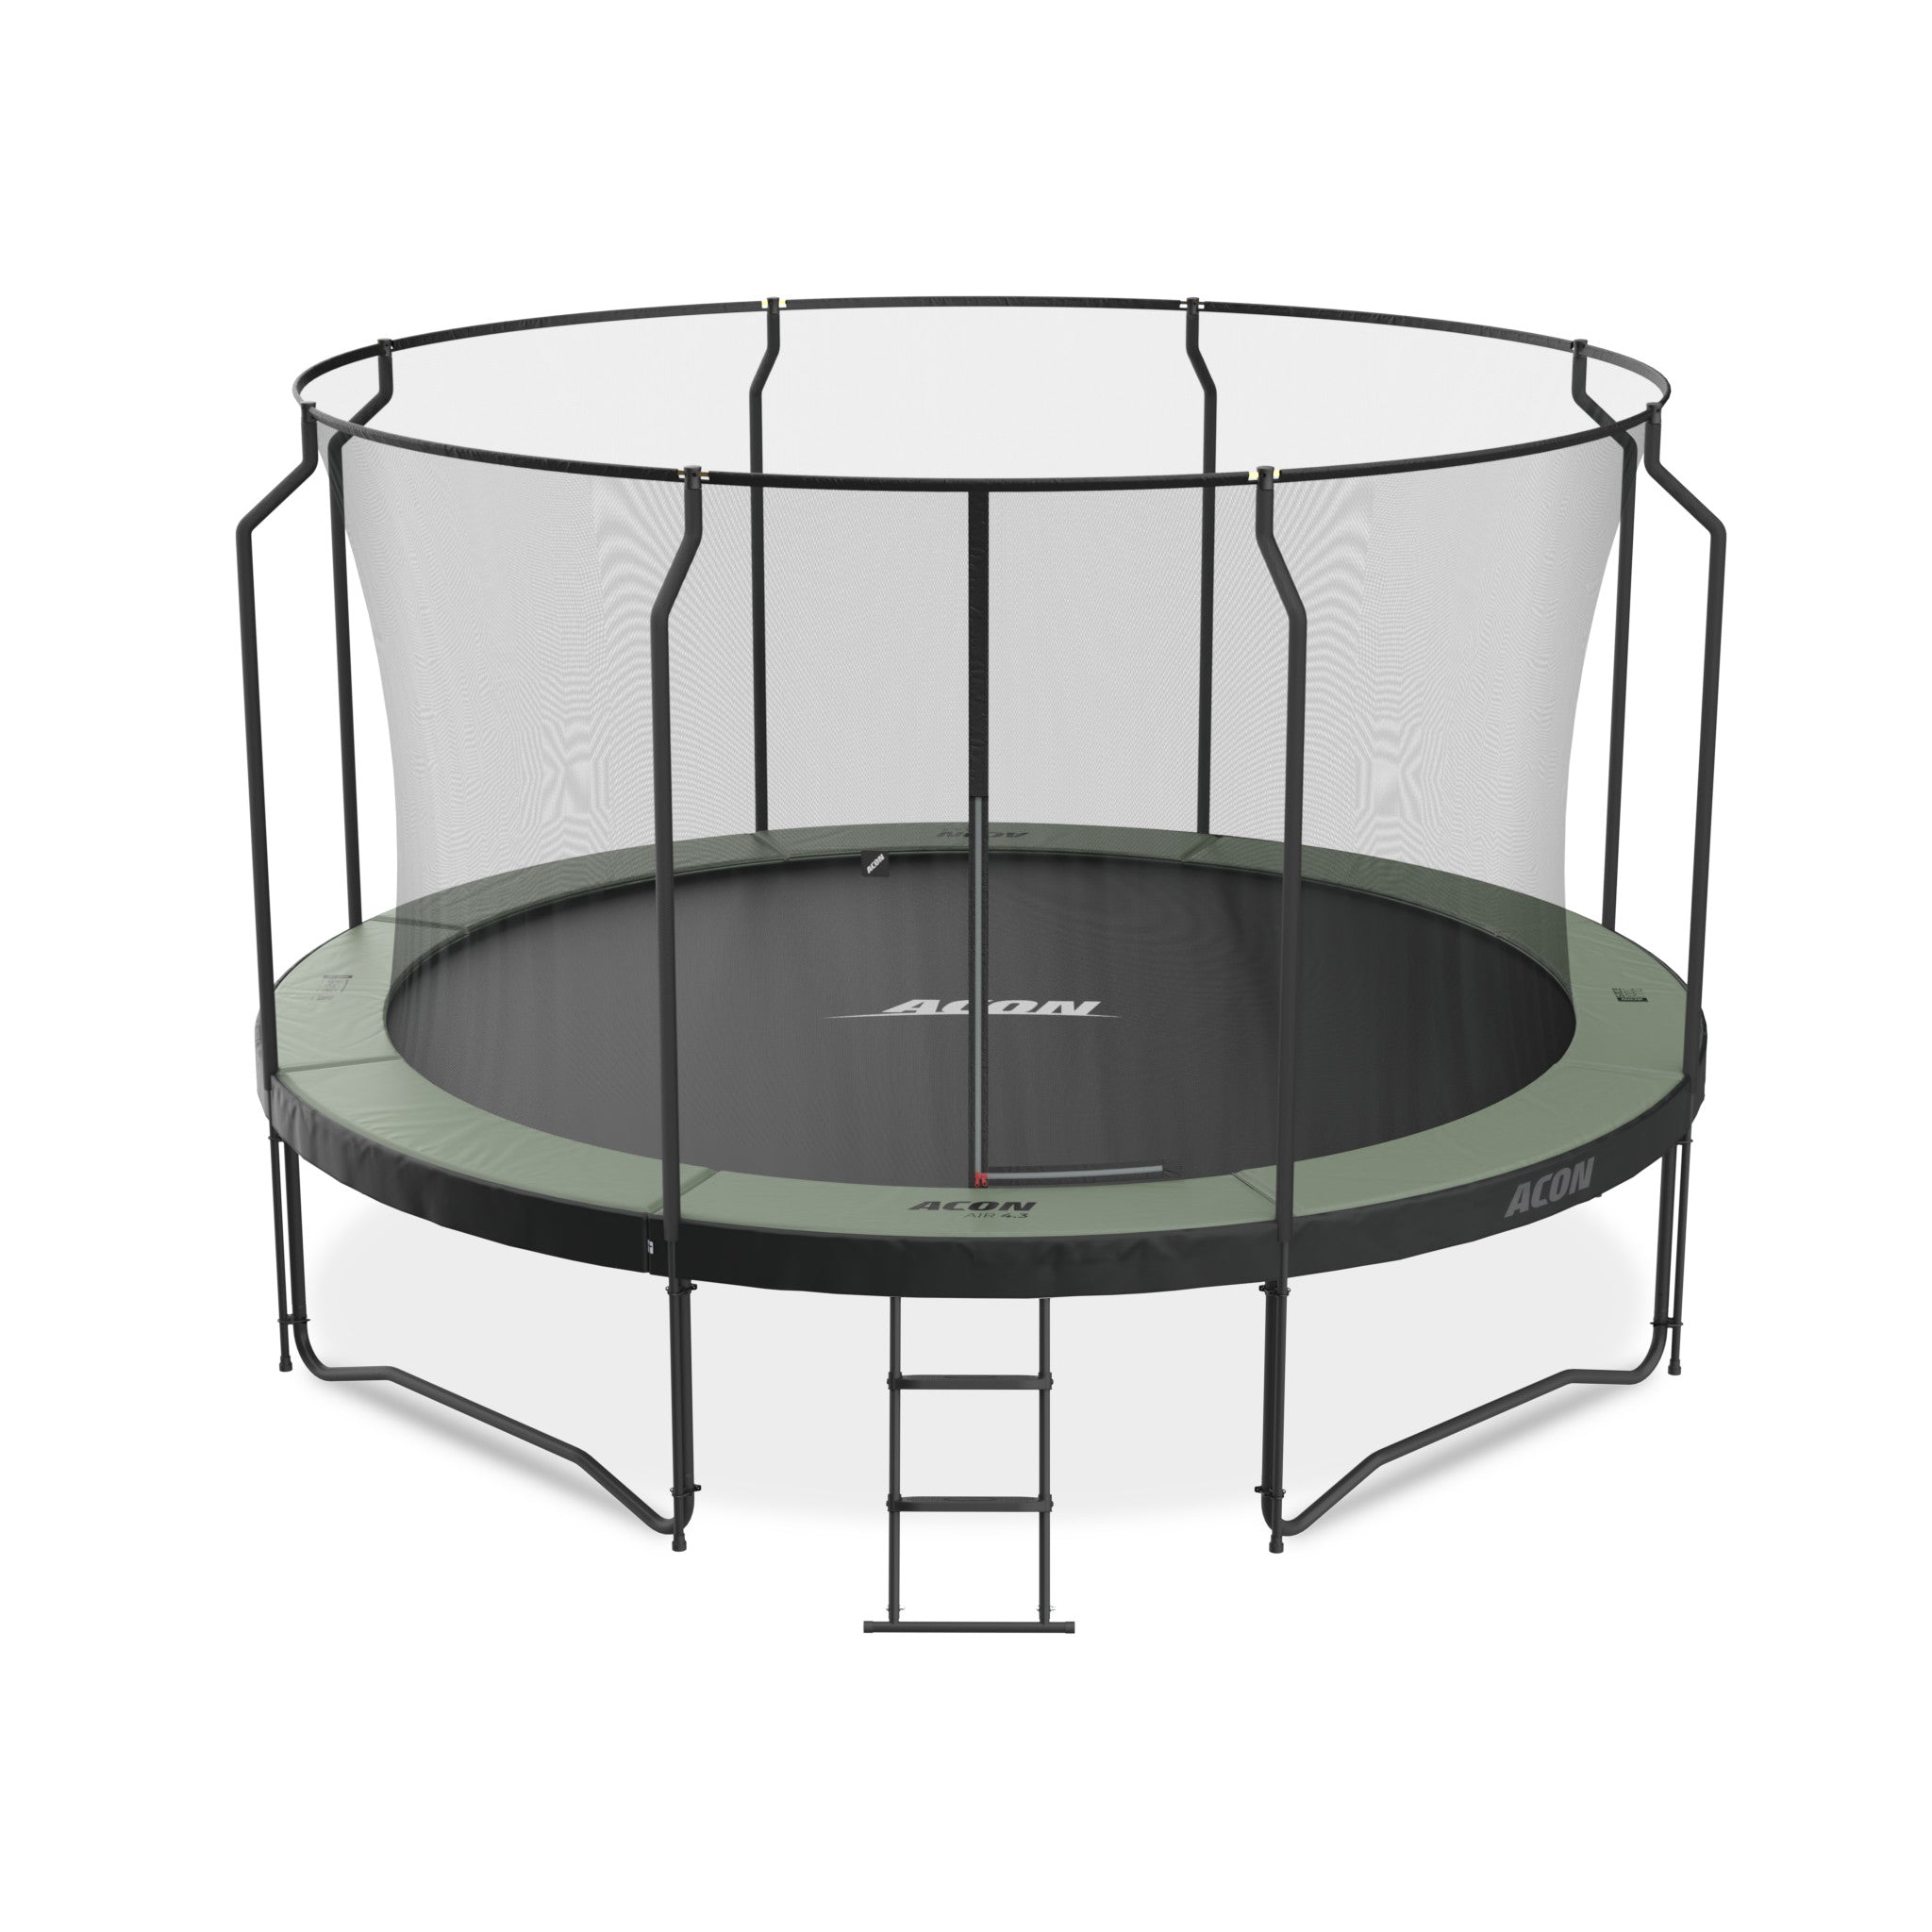 ACON Air 4,3m trampoliini, Premium-turvaverkko ja tikkaat.